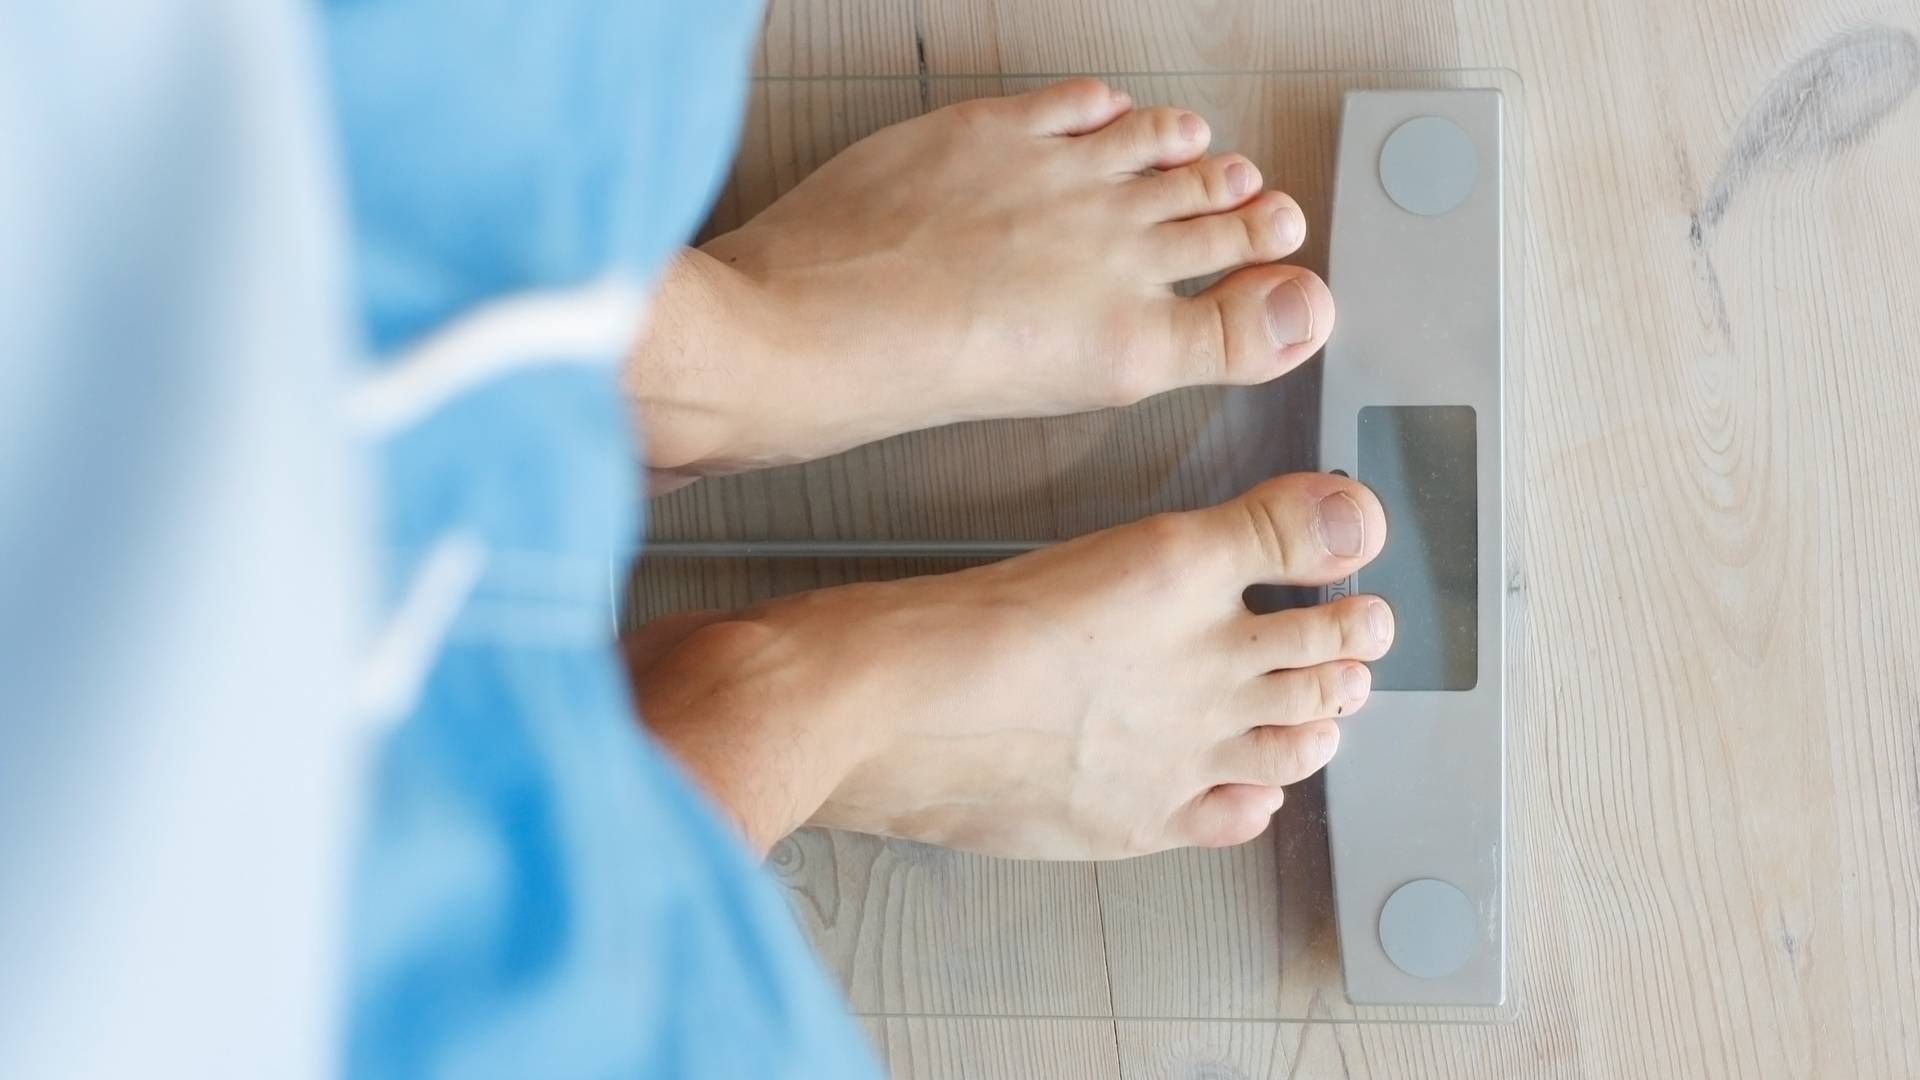 RETNINGSLINJER: Helsemyndigheten NICE i Storbritannia har nå utgitt retningslinjer for bruken av fedmebehandlingen Wegovy, som markedsføres av Novo Nordisk. | Foto: Colourbox